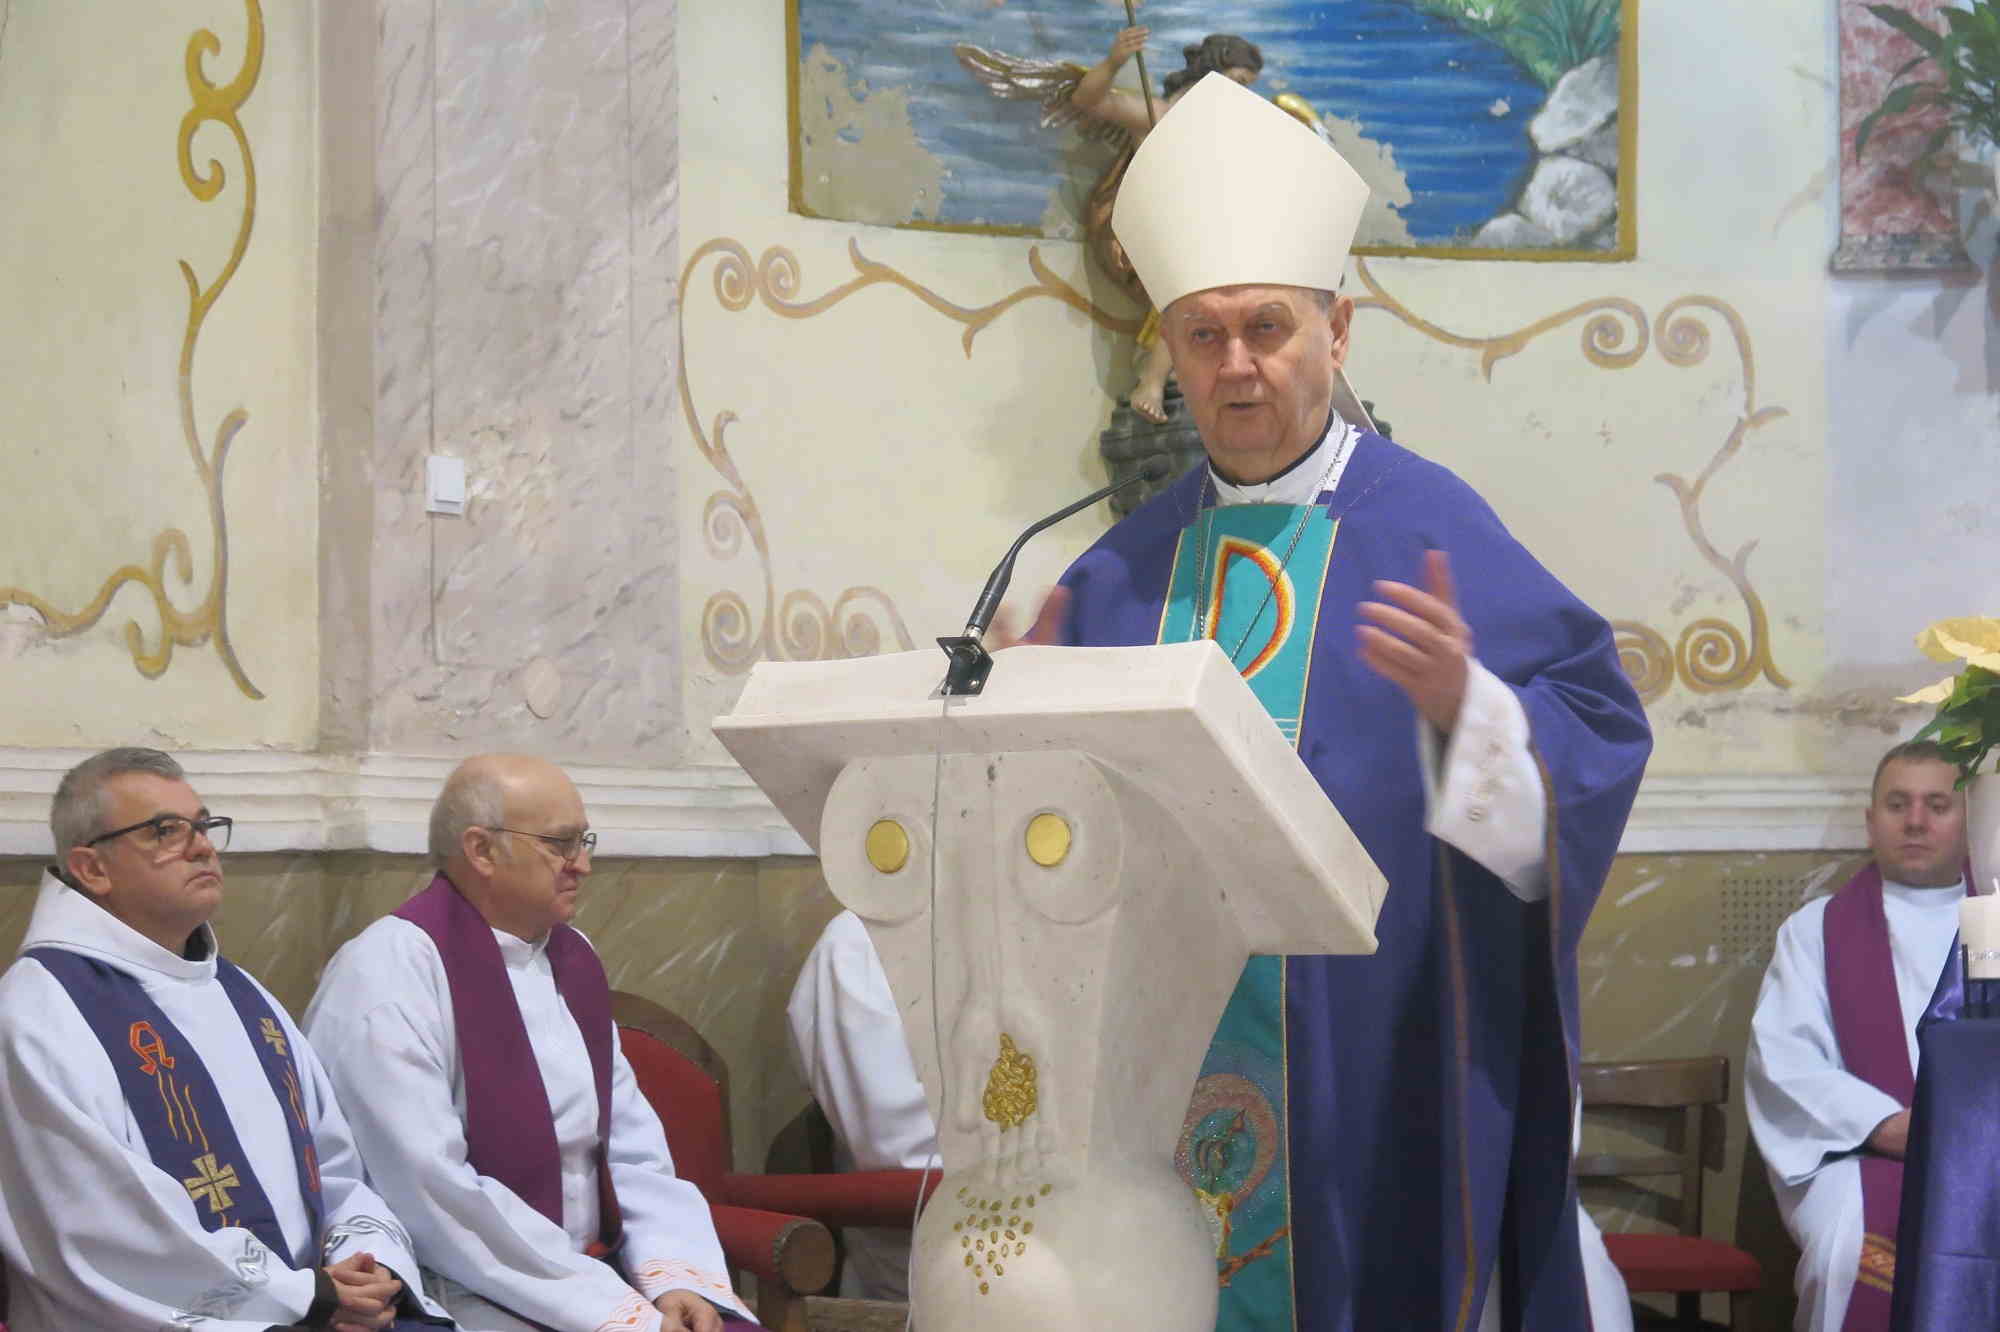 Biskup Mrzljak upozorio na materijalizam prisutan kod pohođenja grobova